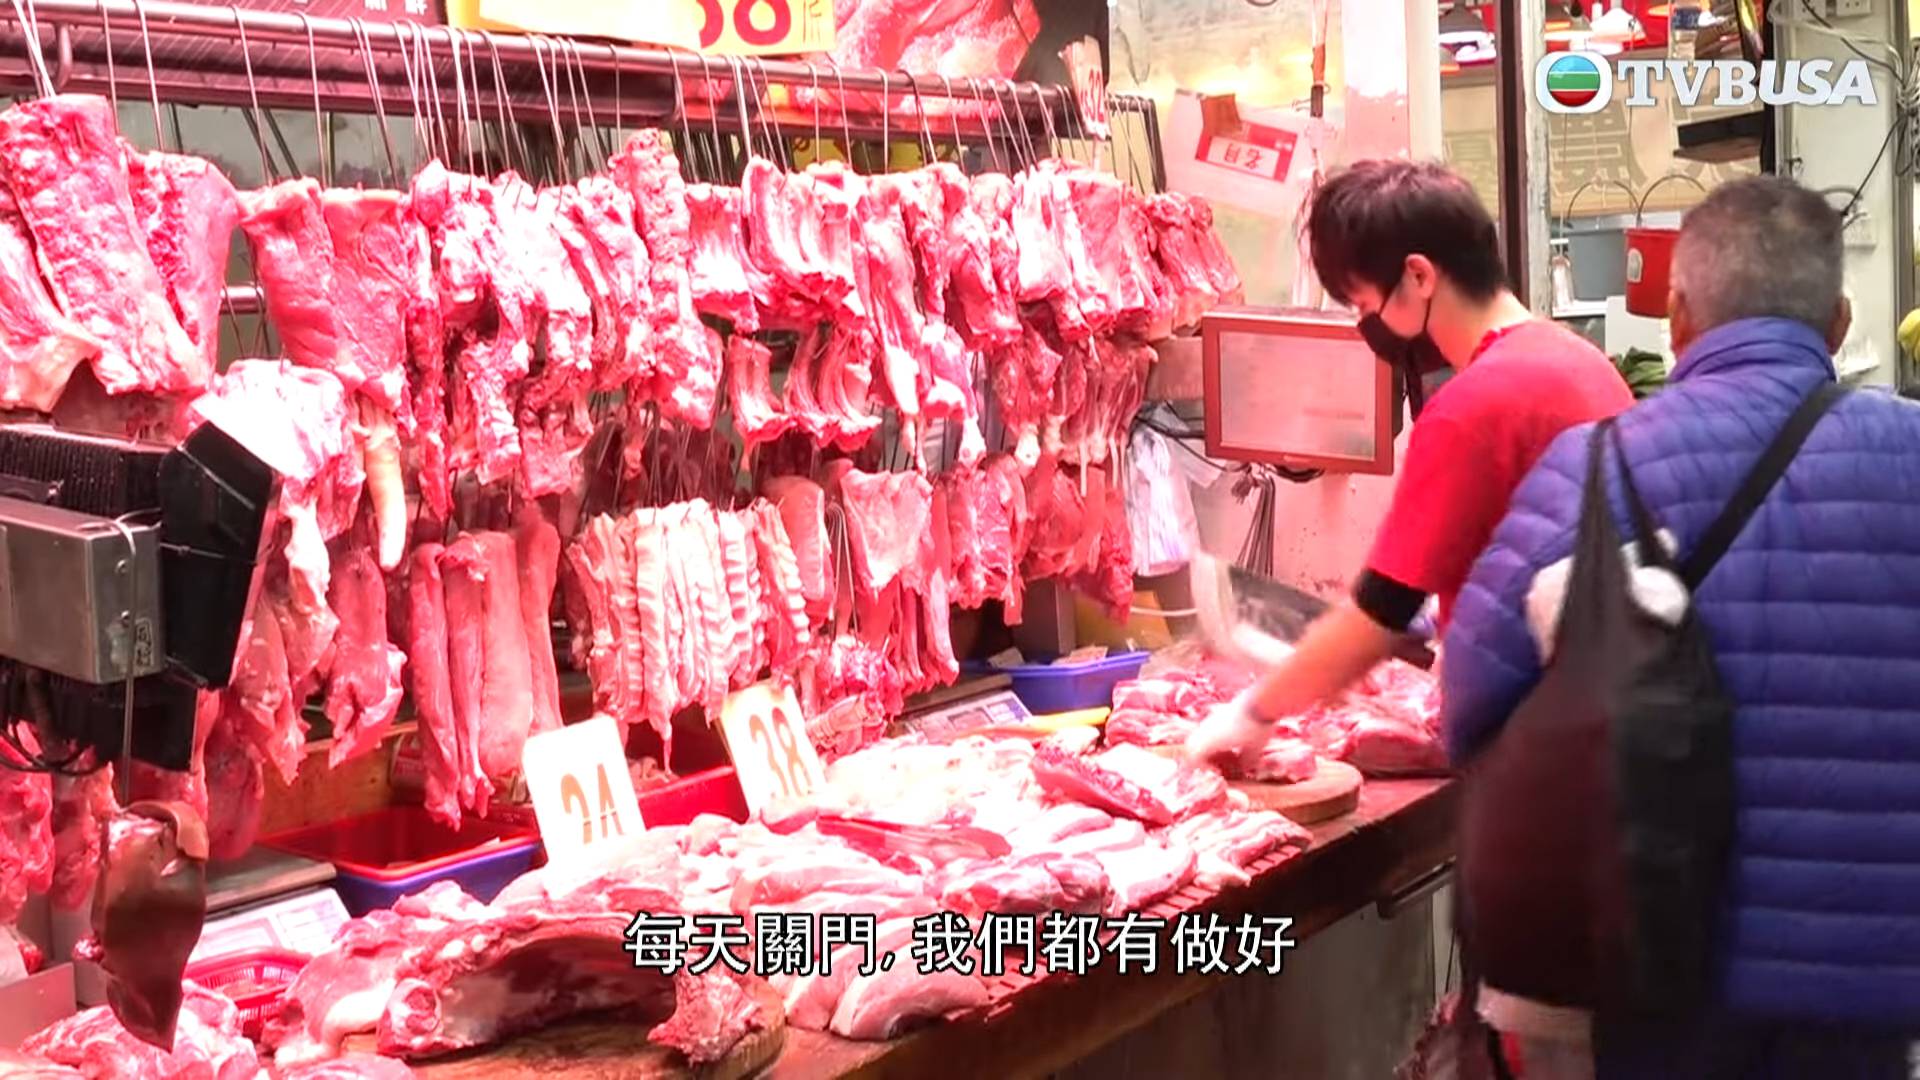 猪肉档 荃湾 《东张》主持就访问了一位猪肉档店主张先生